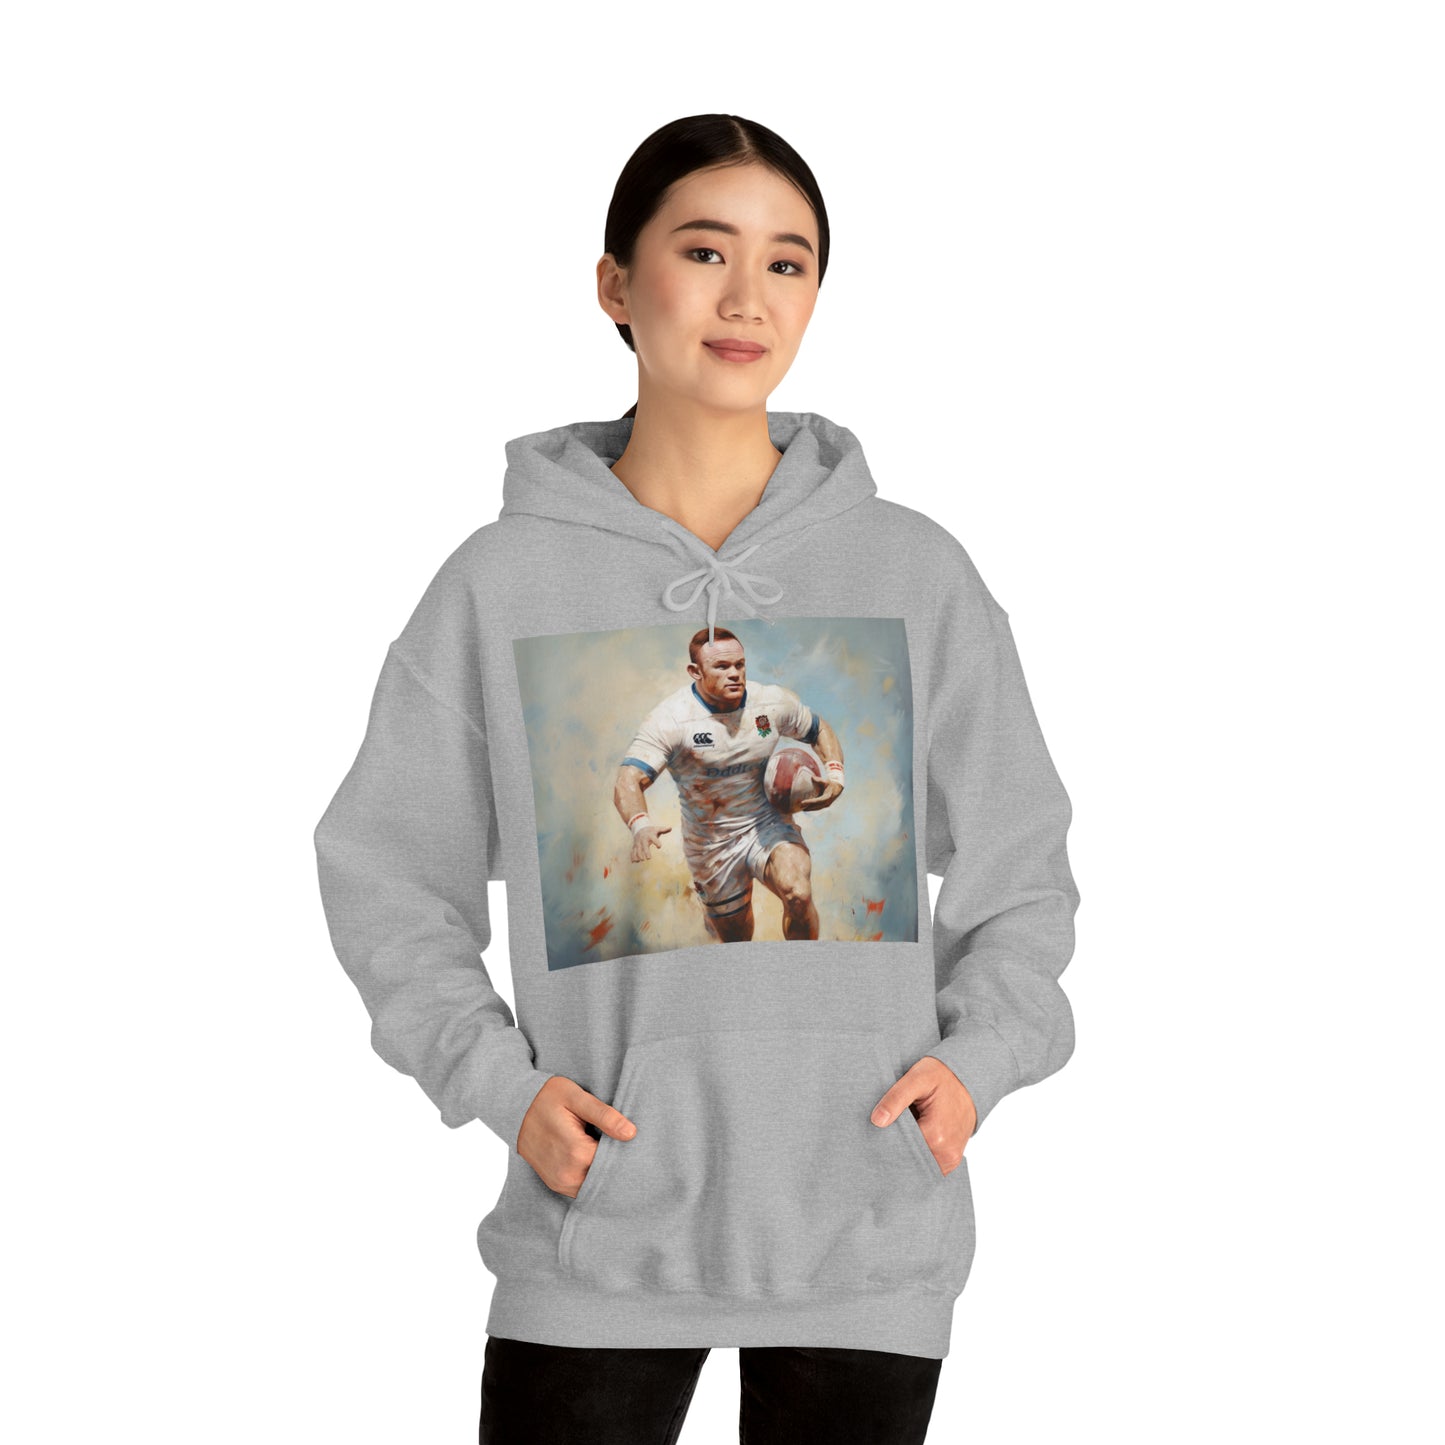 Running Rooney - light hoodies